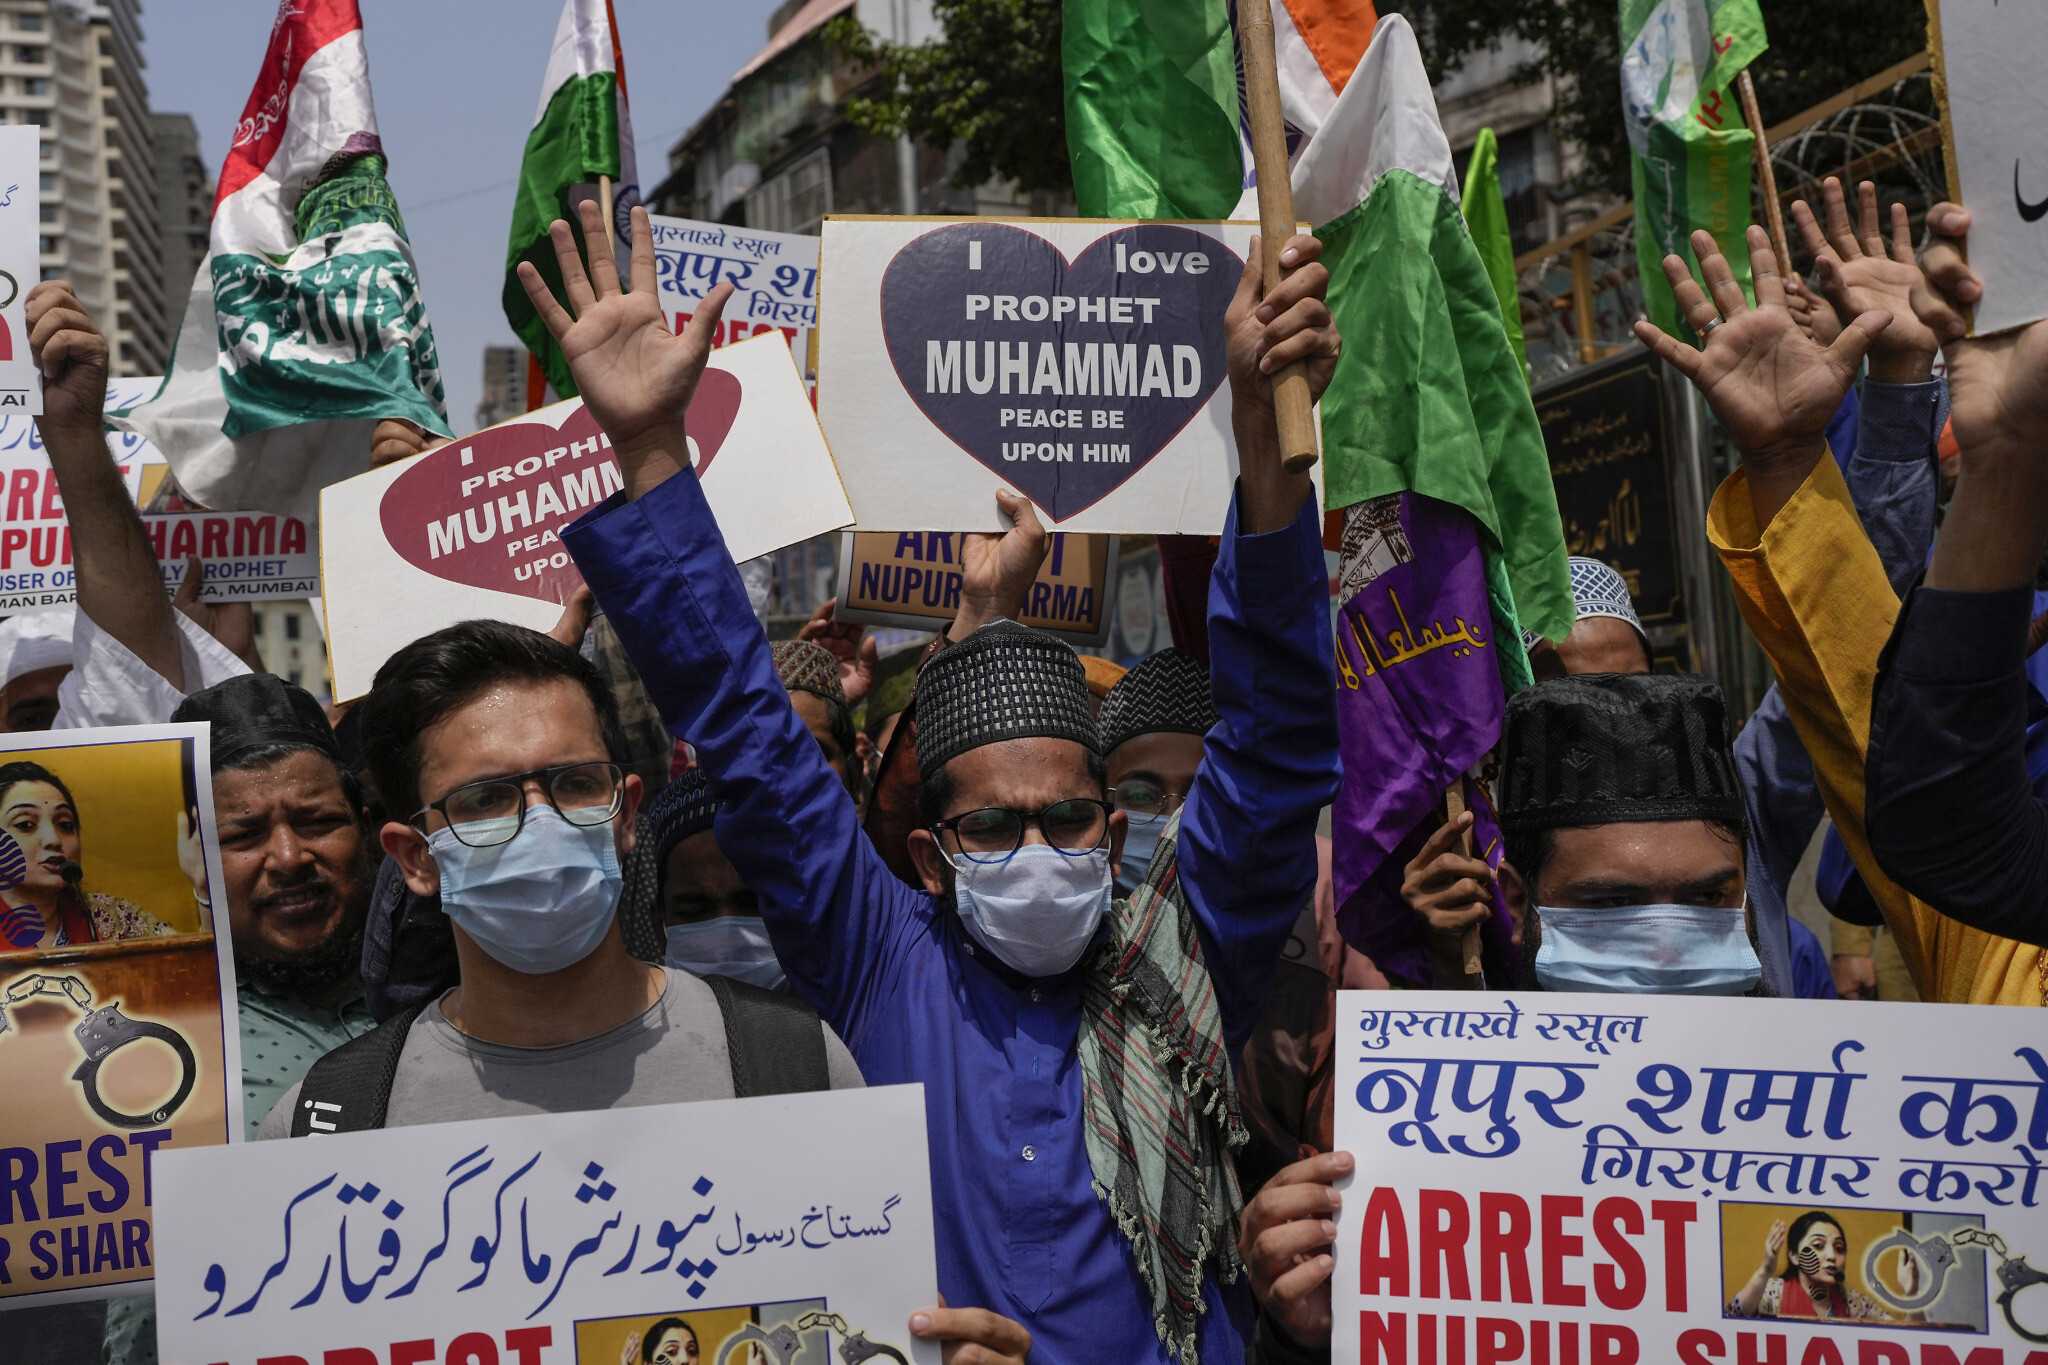 Kabar Gembira bagi Umat Islam, Pelaku Penghina Nabi Muhammad Telah Ditangkap Pihak Kepolisian India